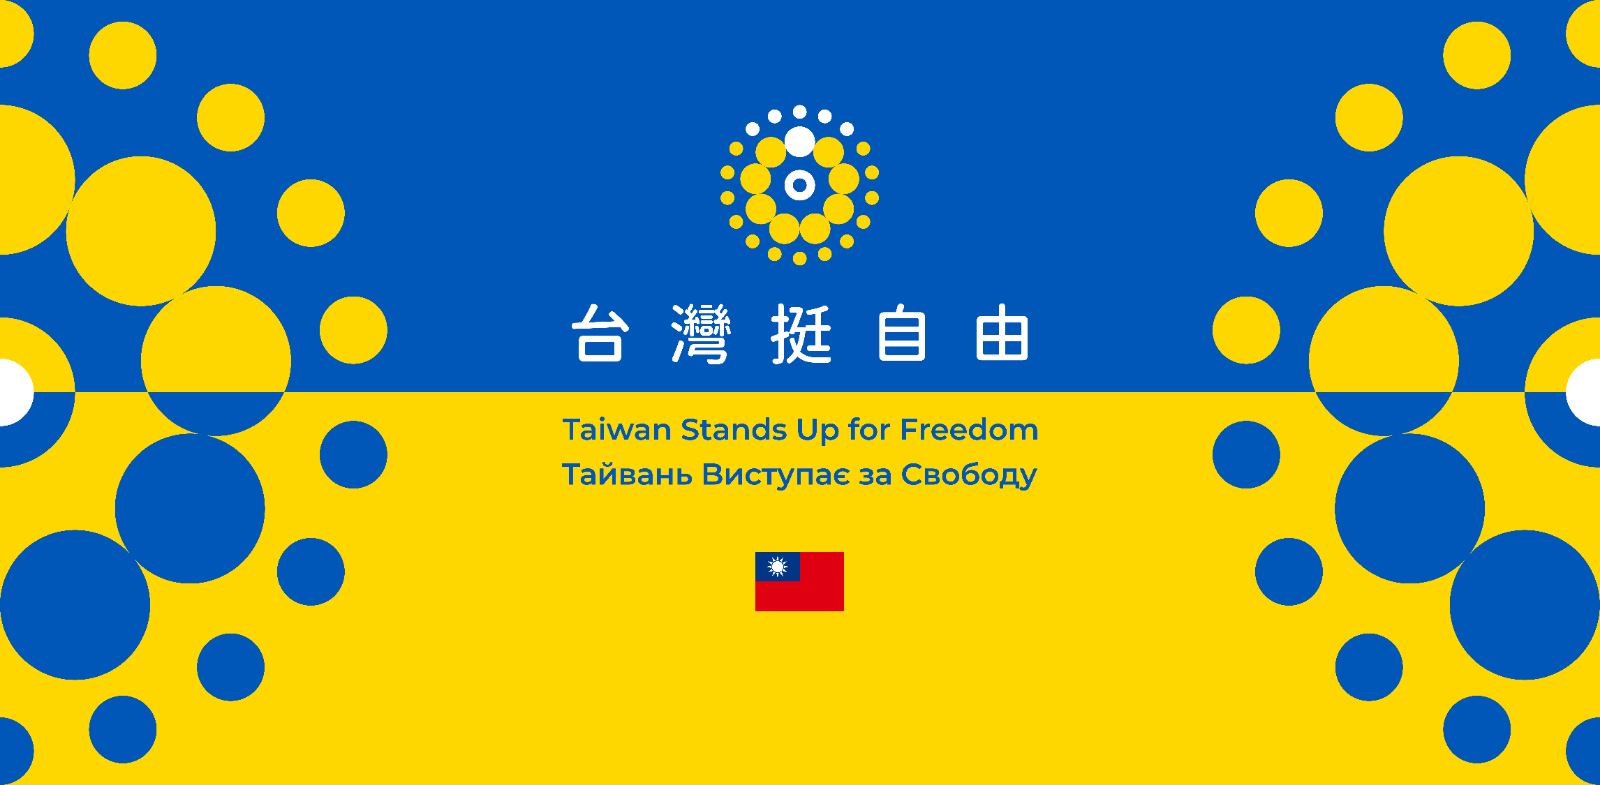 「台灣挺自由」識別設計及中英烏文標語。